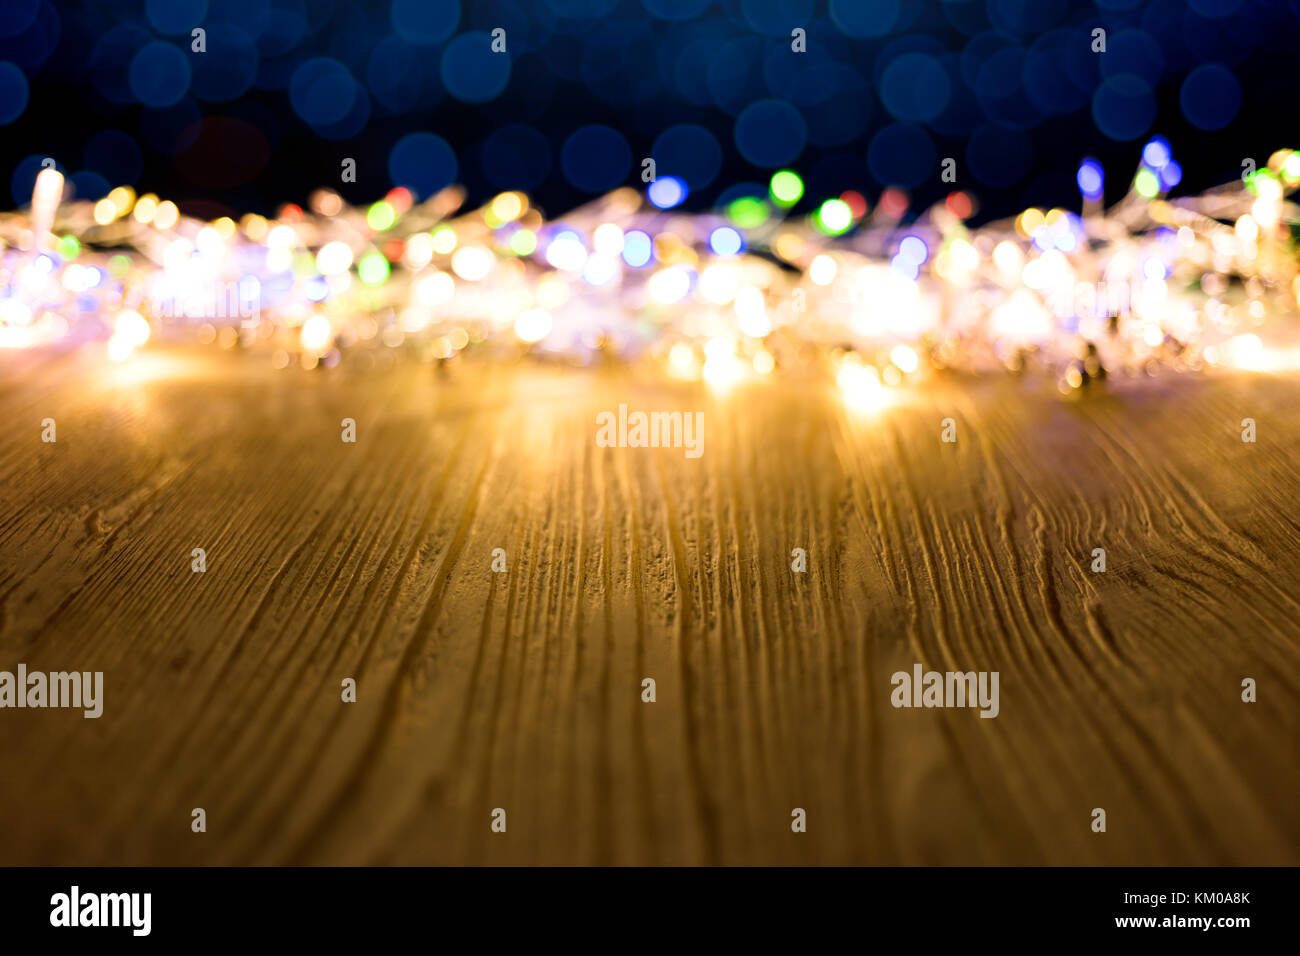 Bunte blurry festliche Weihnachtsbeleuchtung auf Holz rustikale Platten Hintergrund Stockfoto